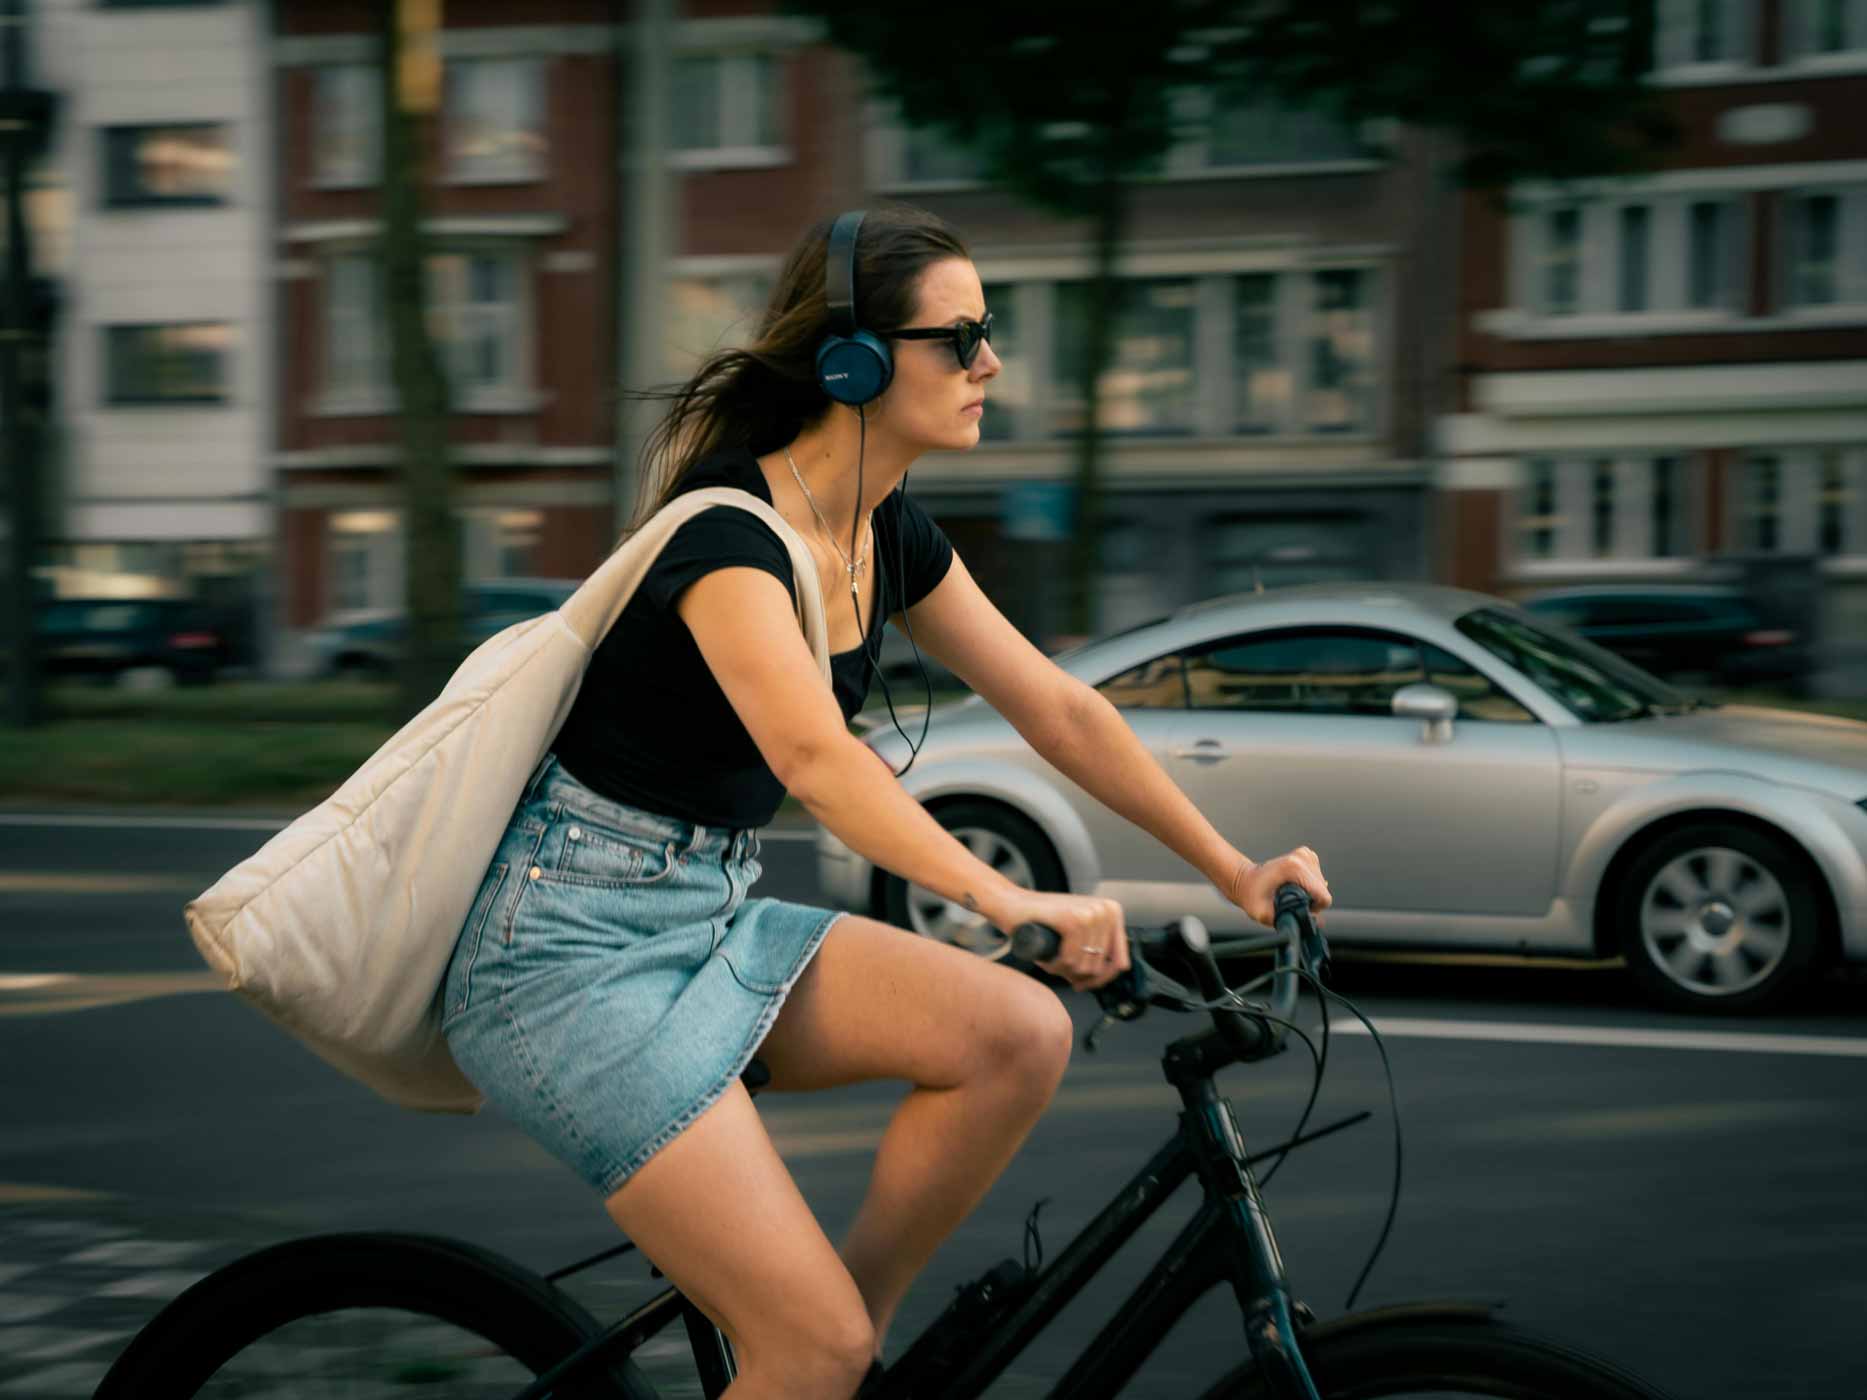 Frau fährt Fahrrad und trägt eine große, weiße Umhängetasche über der Schulter